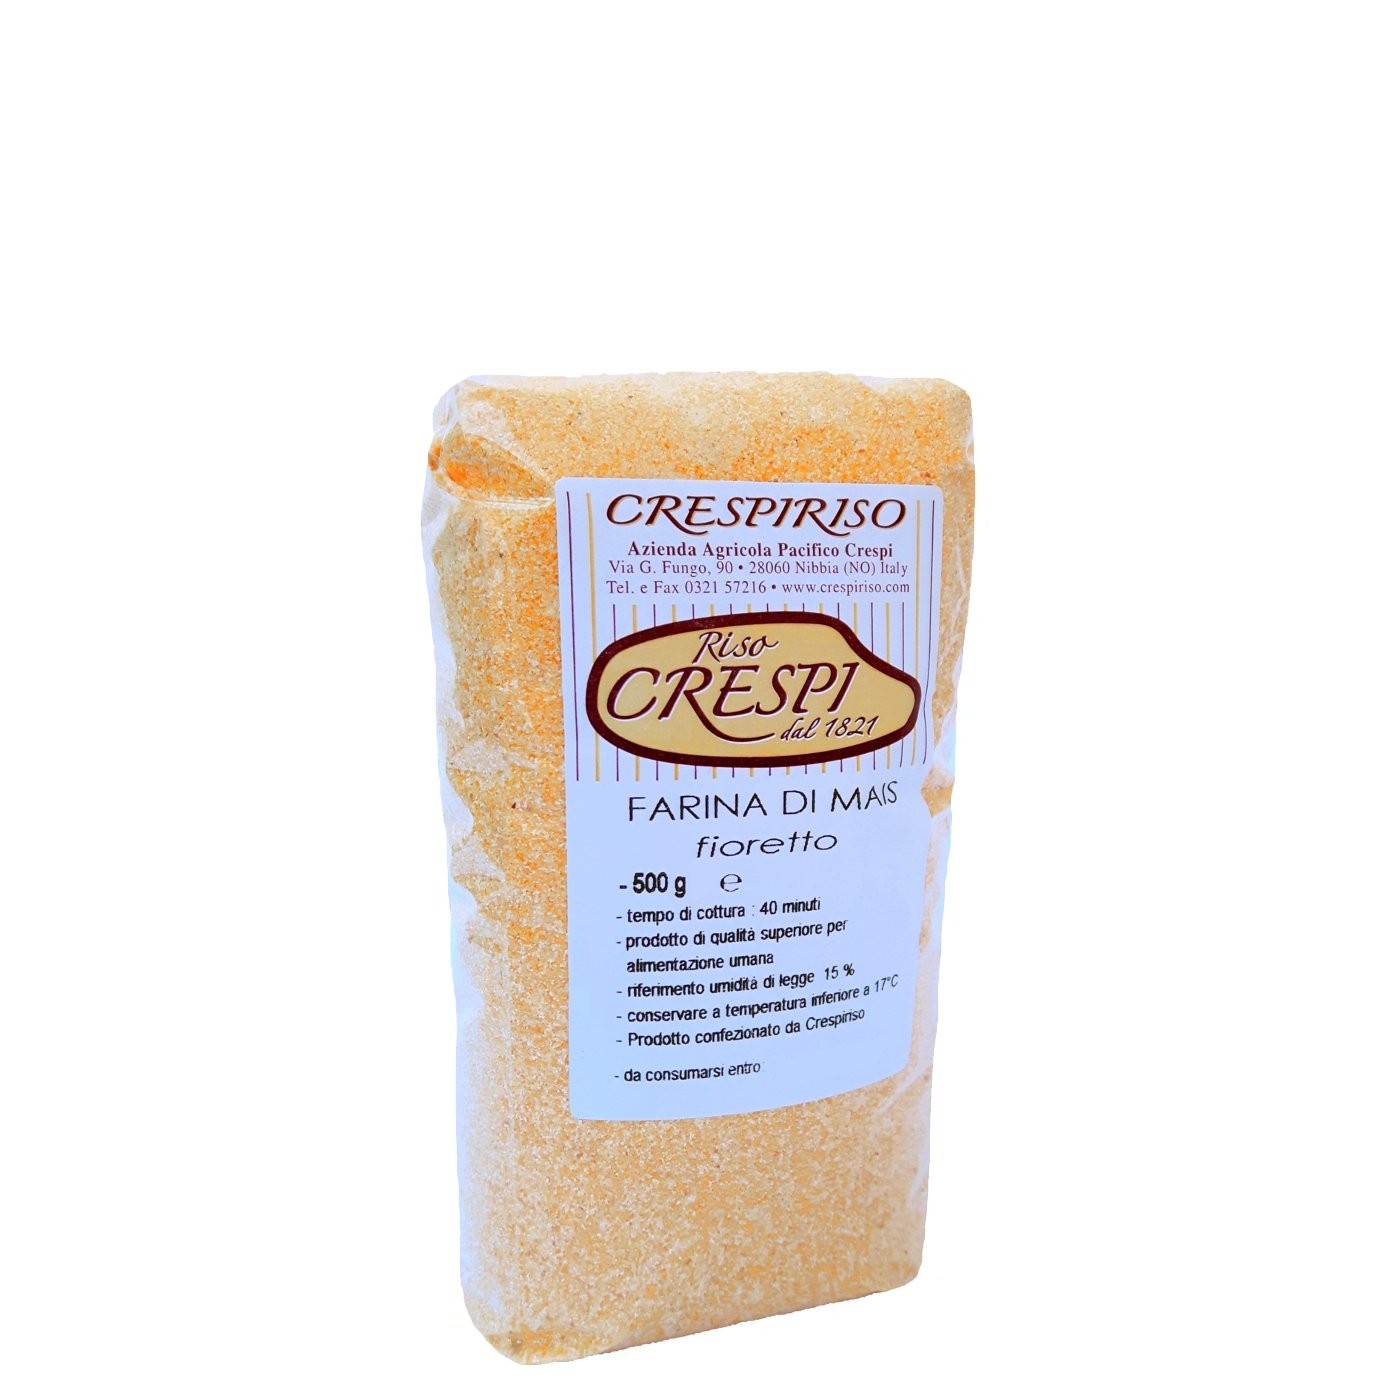 Farina di Mais (granoturco) fioretto giallo classico crespiriso 500g